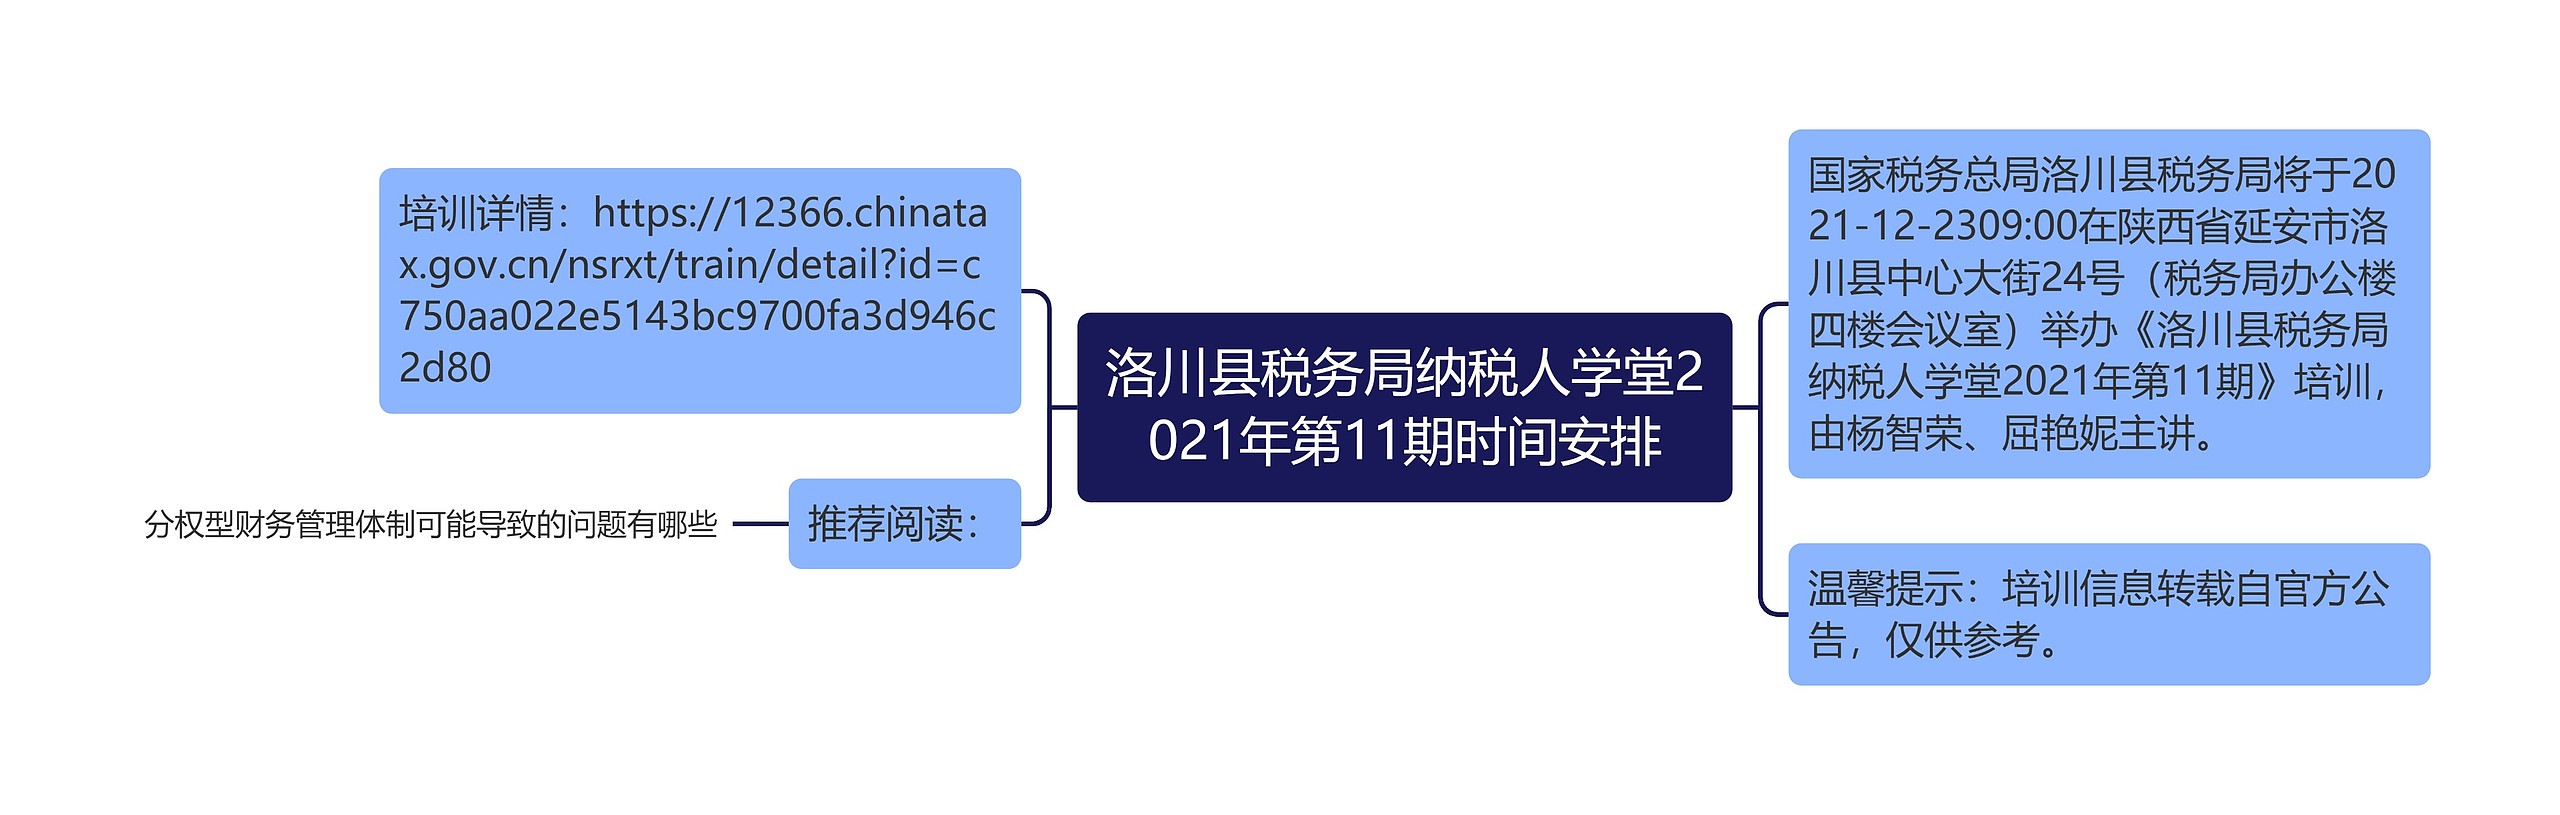 洛川县税务局纳税人学堂2021年第11期时间安排思维导图